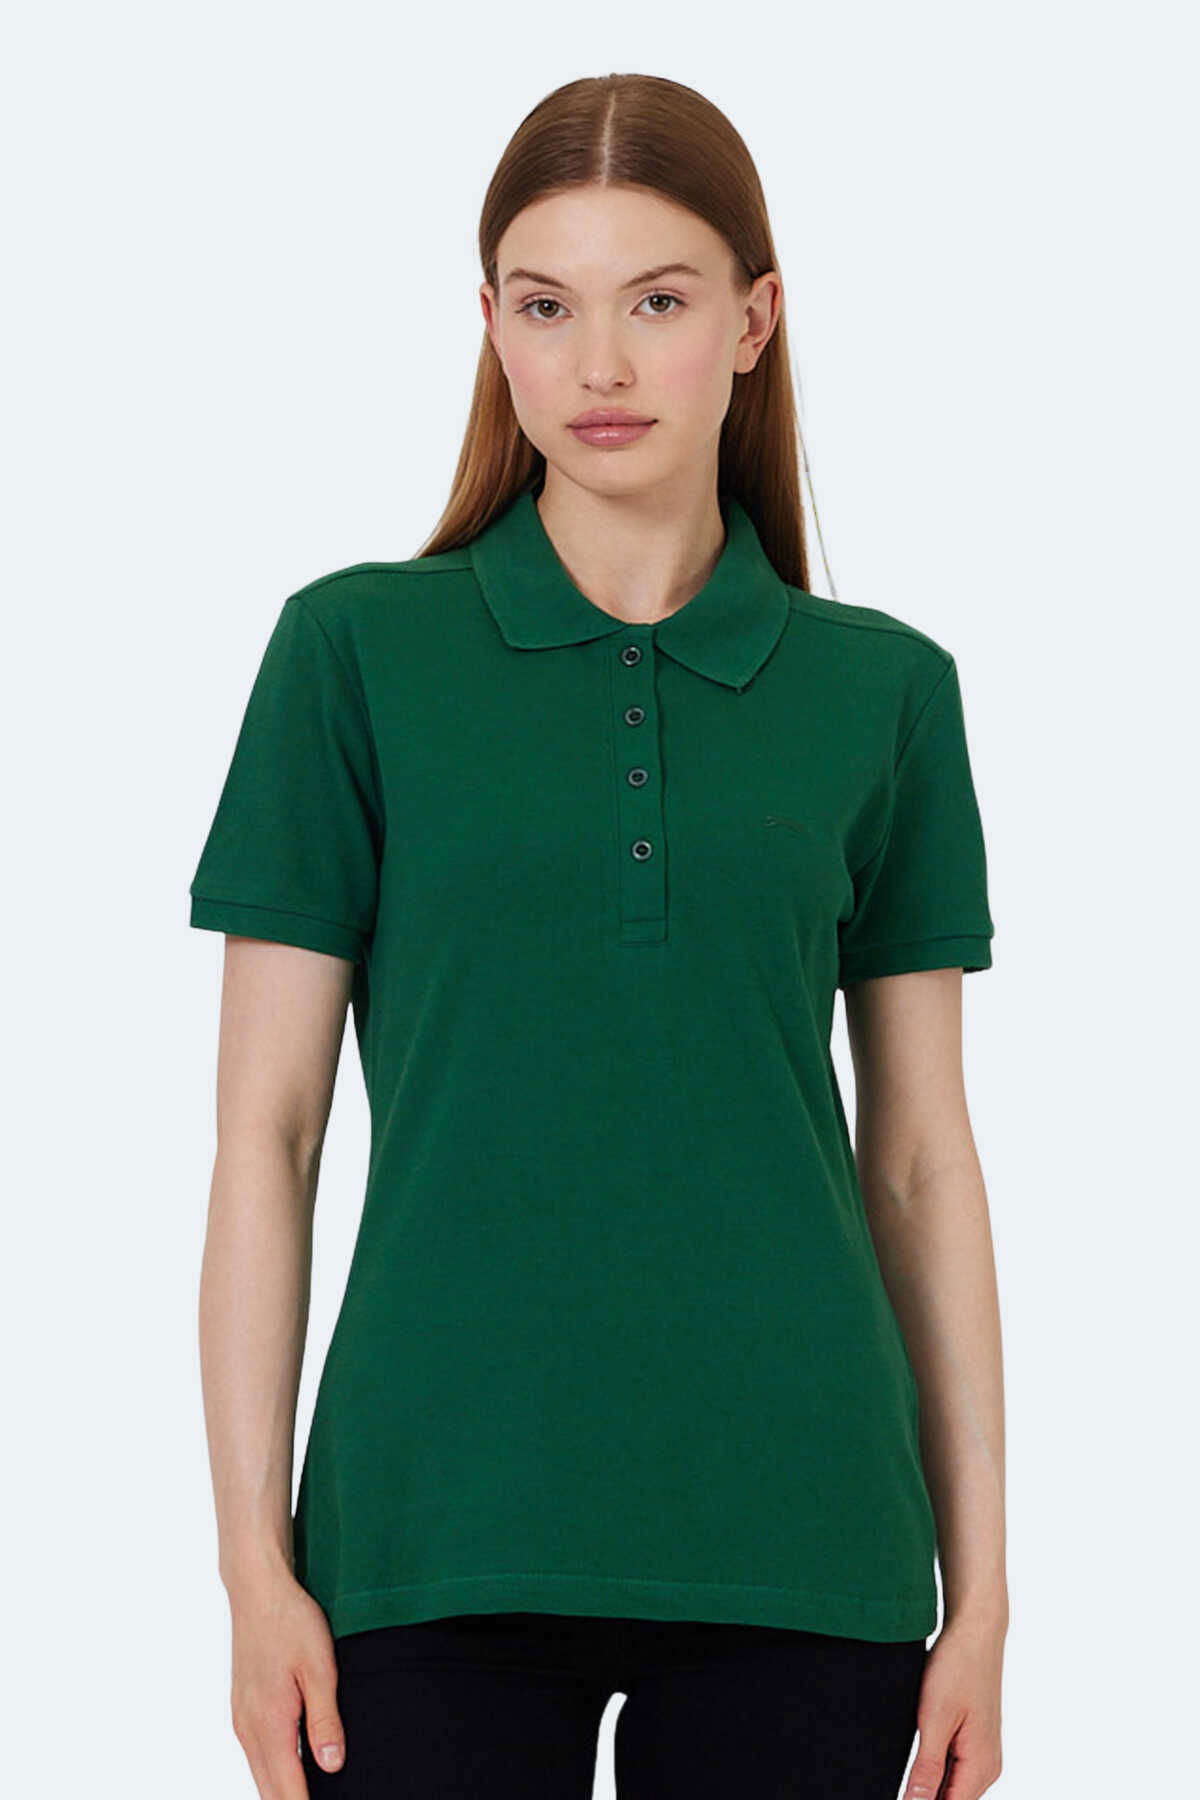 Slazenger - Slazenger VERA I Kadın Tişört Yeşil